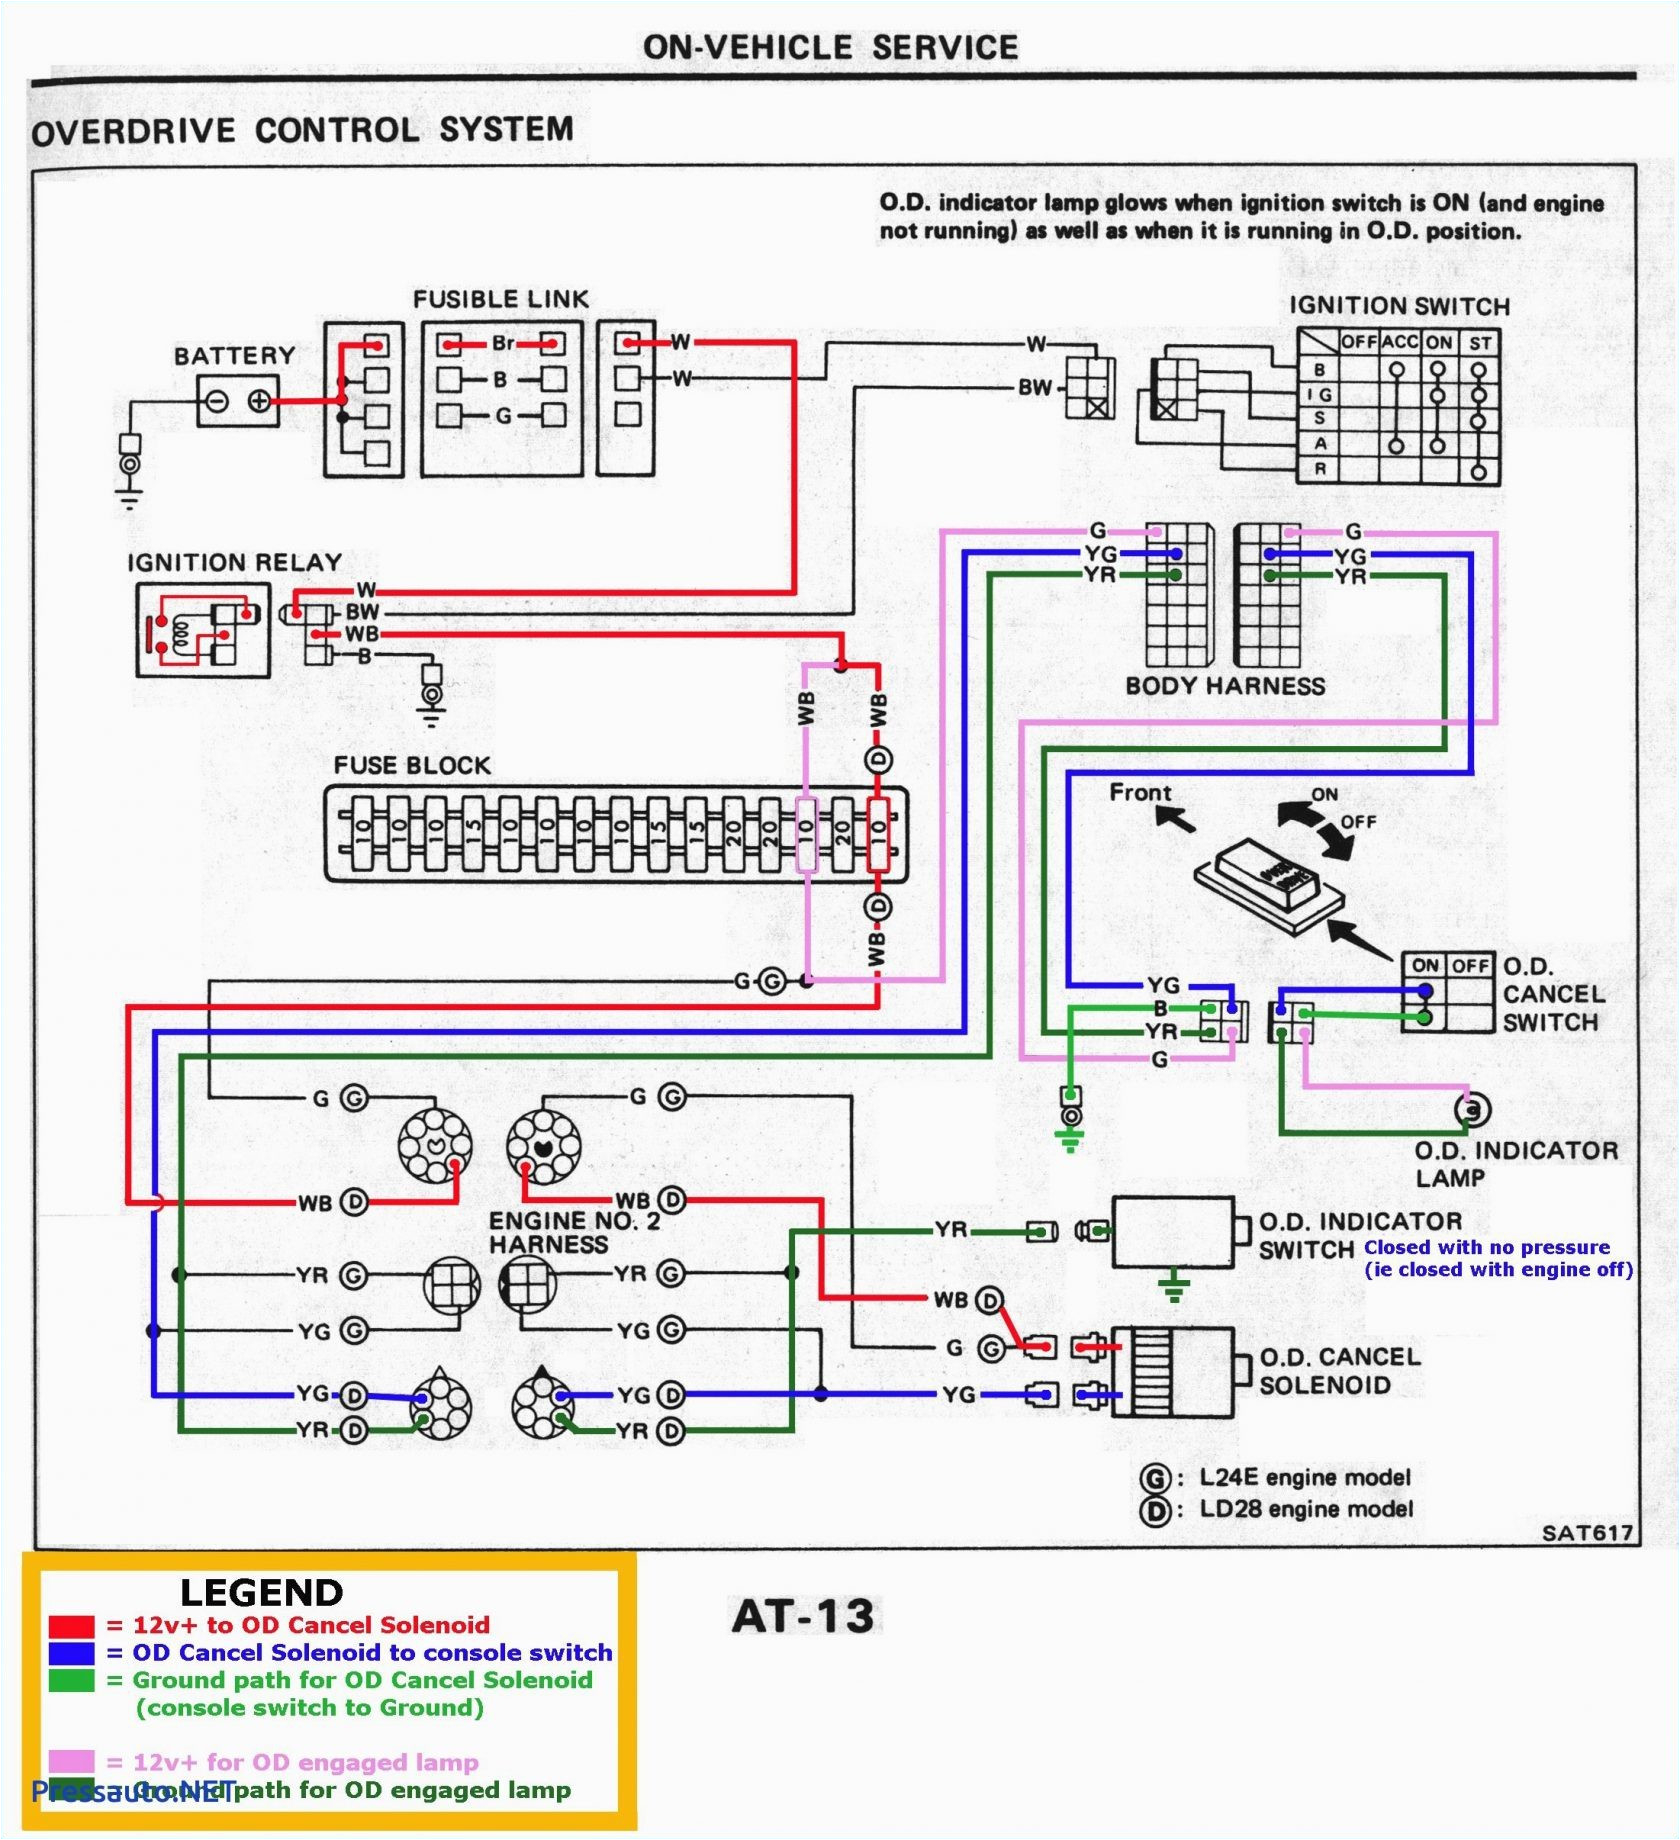 Karr Alarm Wiring Diagram Python Wiring Diagrams Wiring Diagram Basic